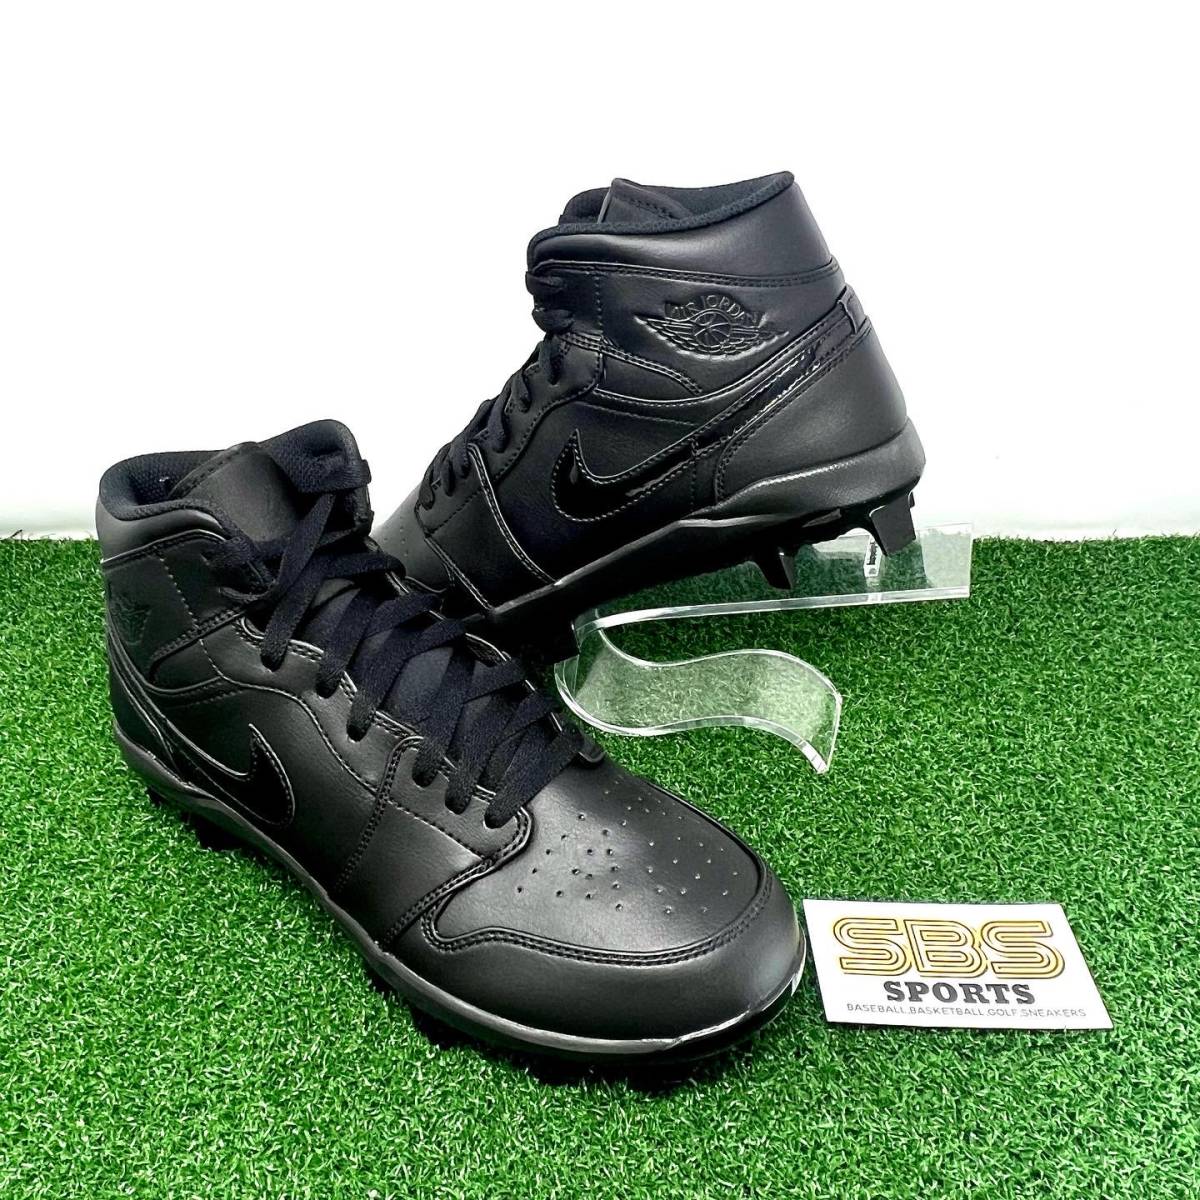 【日本未発売 28cm】 ナイキ ジョーダン 野球 スパイク Jordan 1 Retro MCS ポイント ブラックAV5354 002